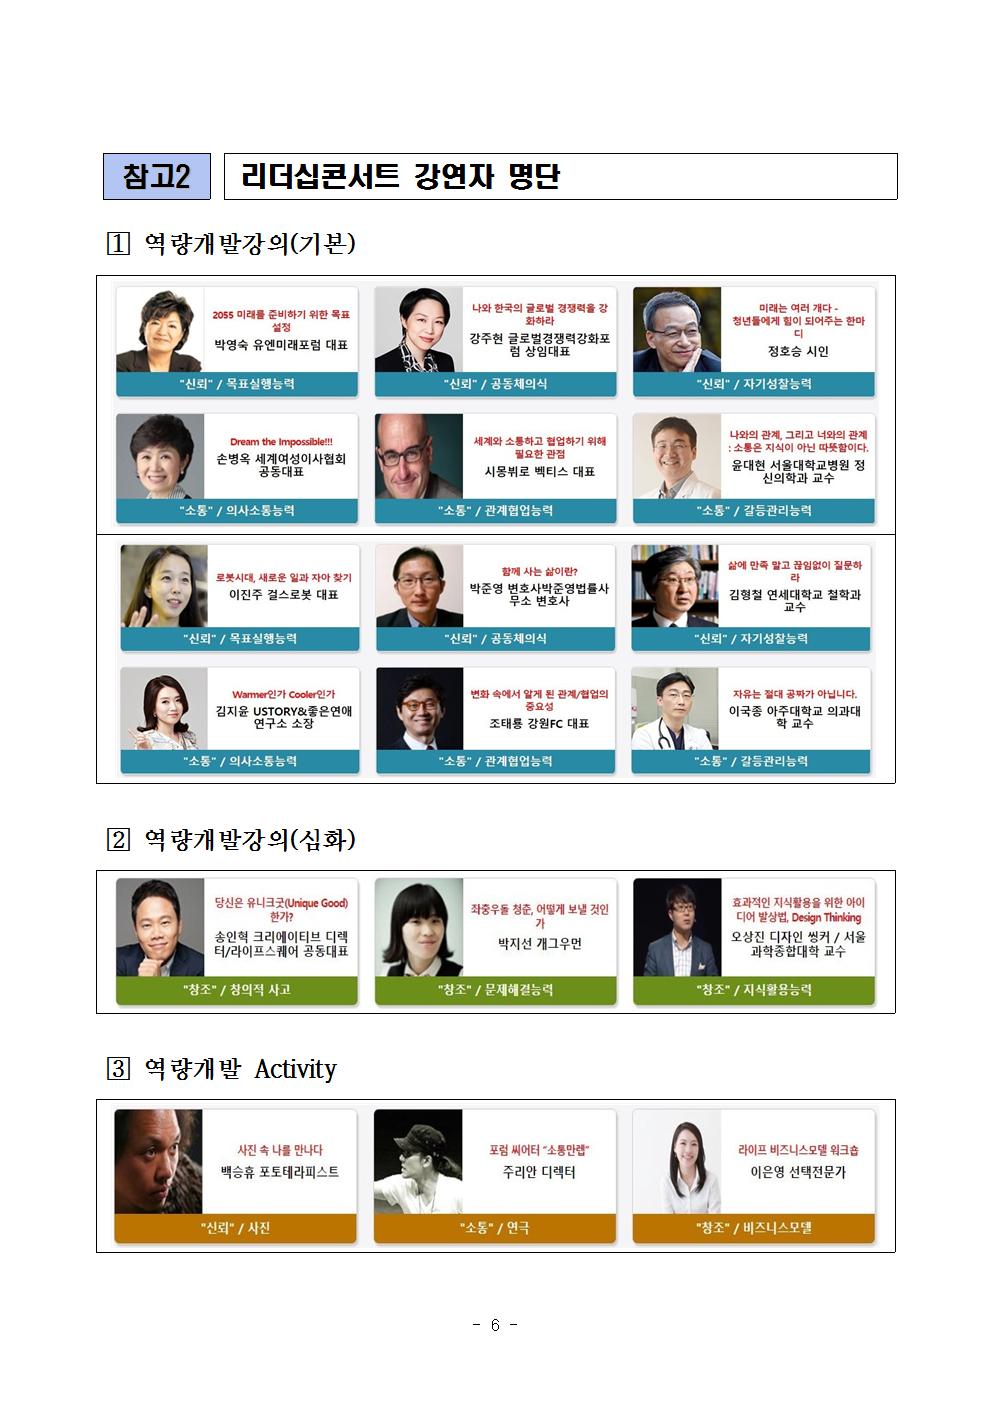 09-23(토)[보도자료] 2017년 차세대리더육성멘토링 리더십콘서트 개최006.jpg